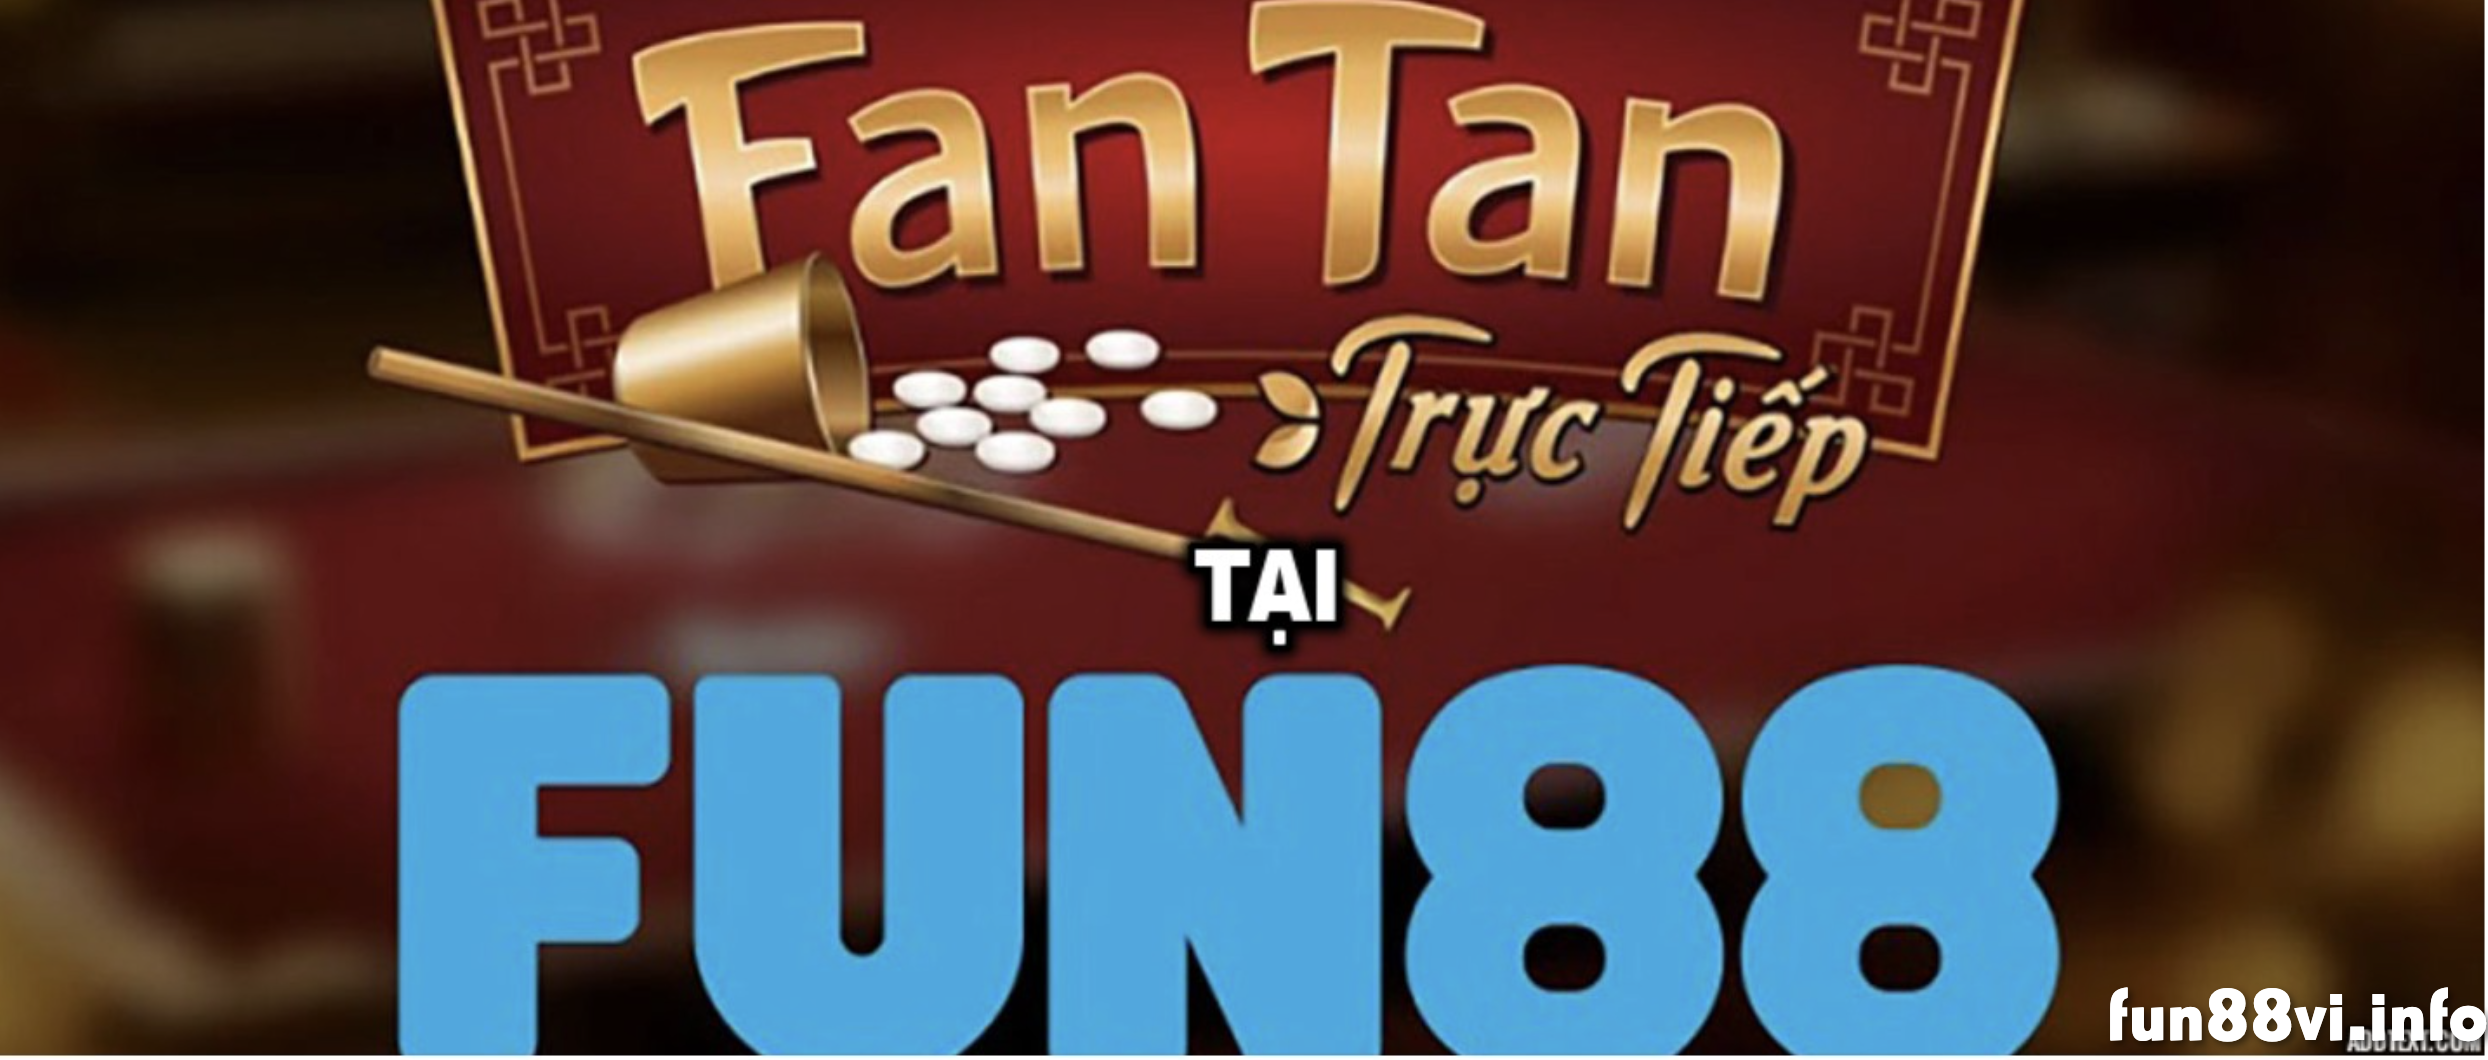 Fantan Fun88